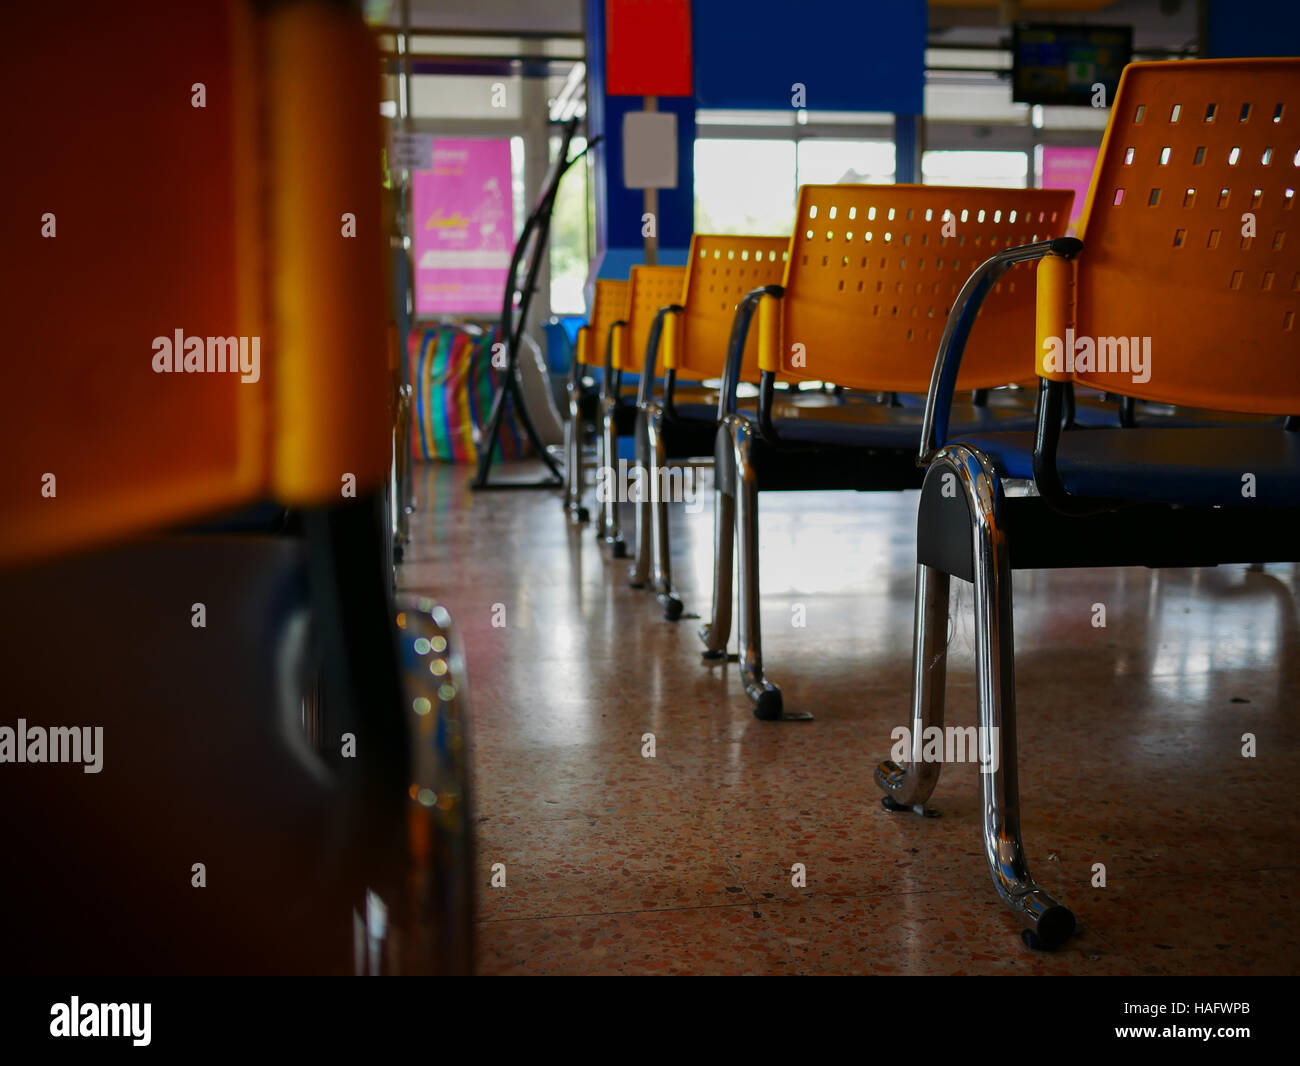 Chaises jaune vide à l'intérieur d'une station de bus Banque D'Images